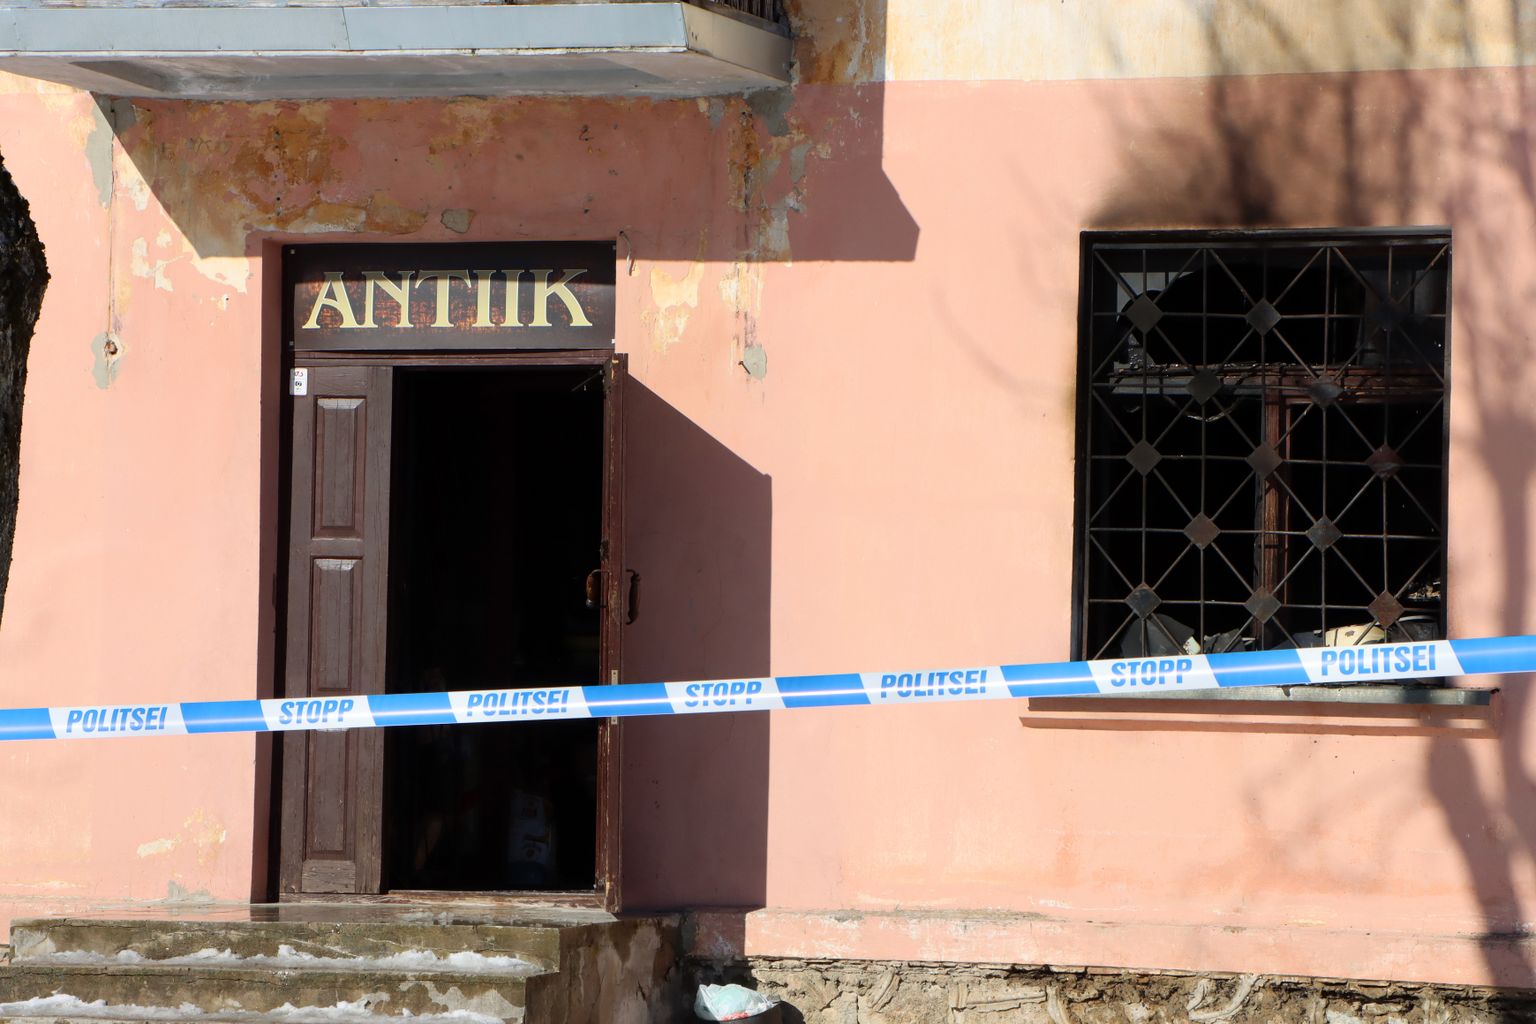 Selles majas toimus esmaspäeva ennelõunal plahvatus, milles kahtlustatakse 43aastast meest.